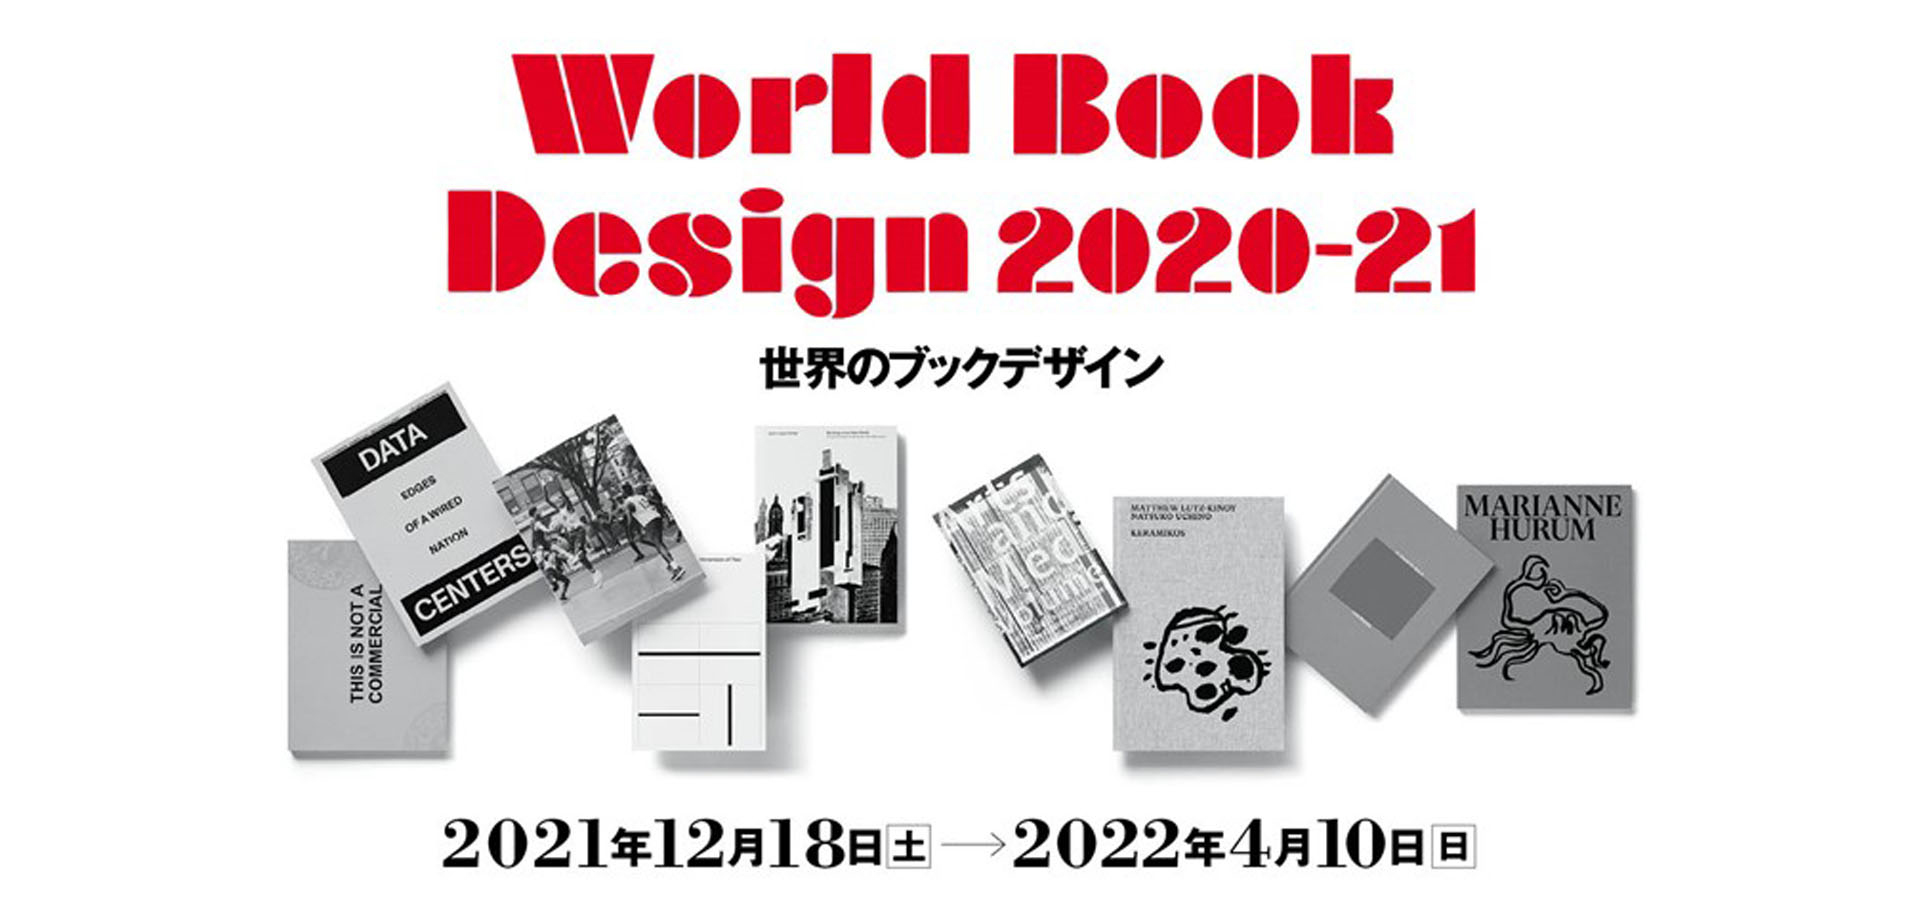 凸版印刷 印刷博物館 P&Pギャラリー　「世界のブックデザイン2020-21」展